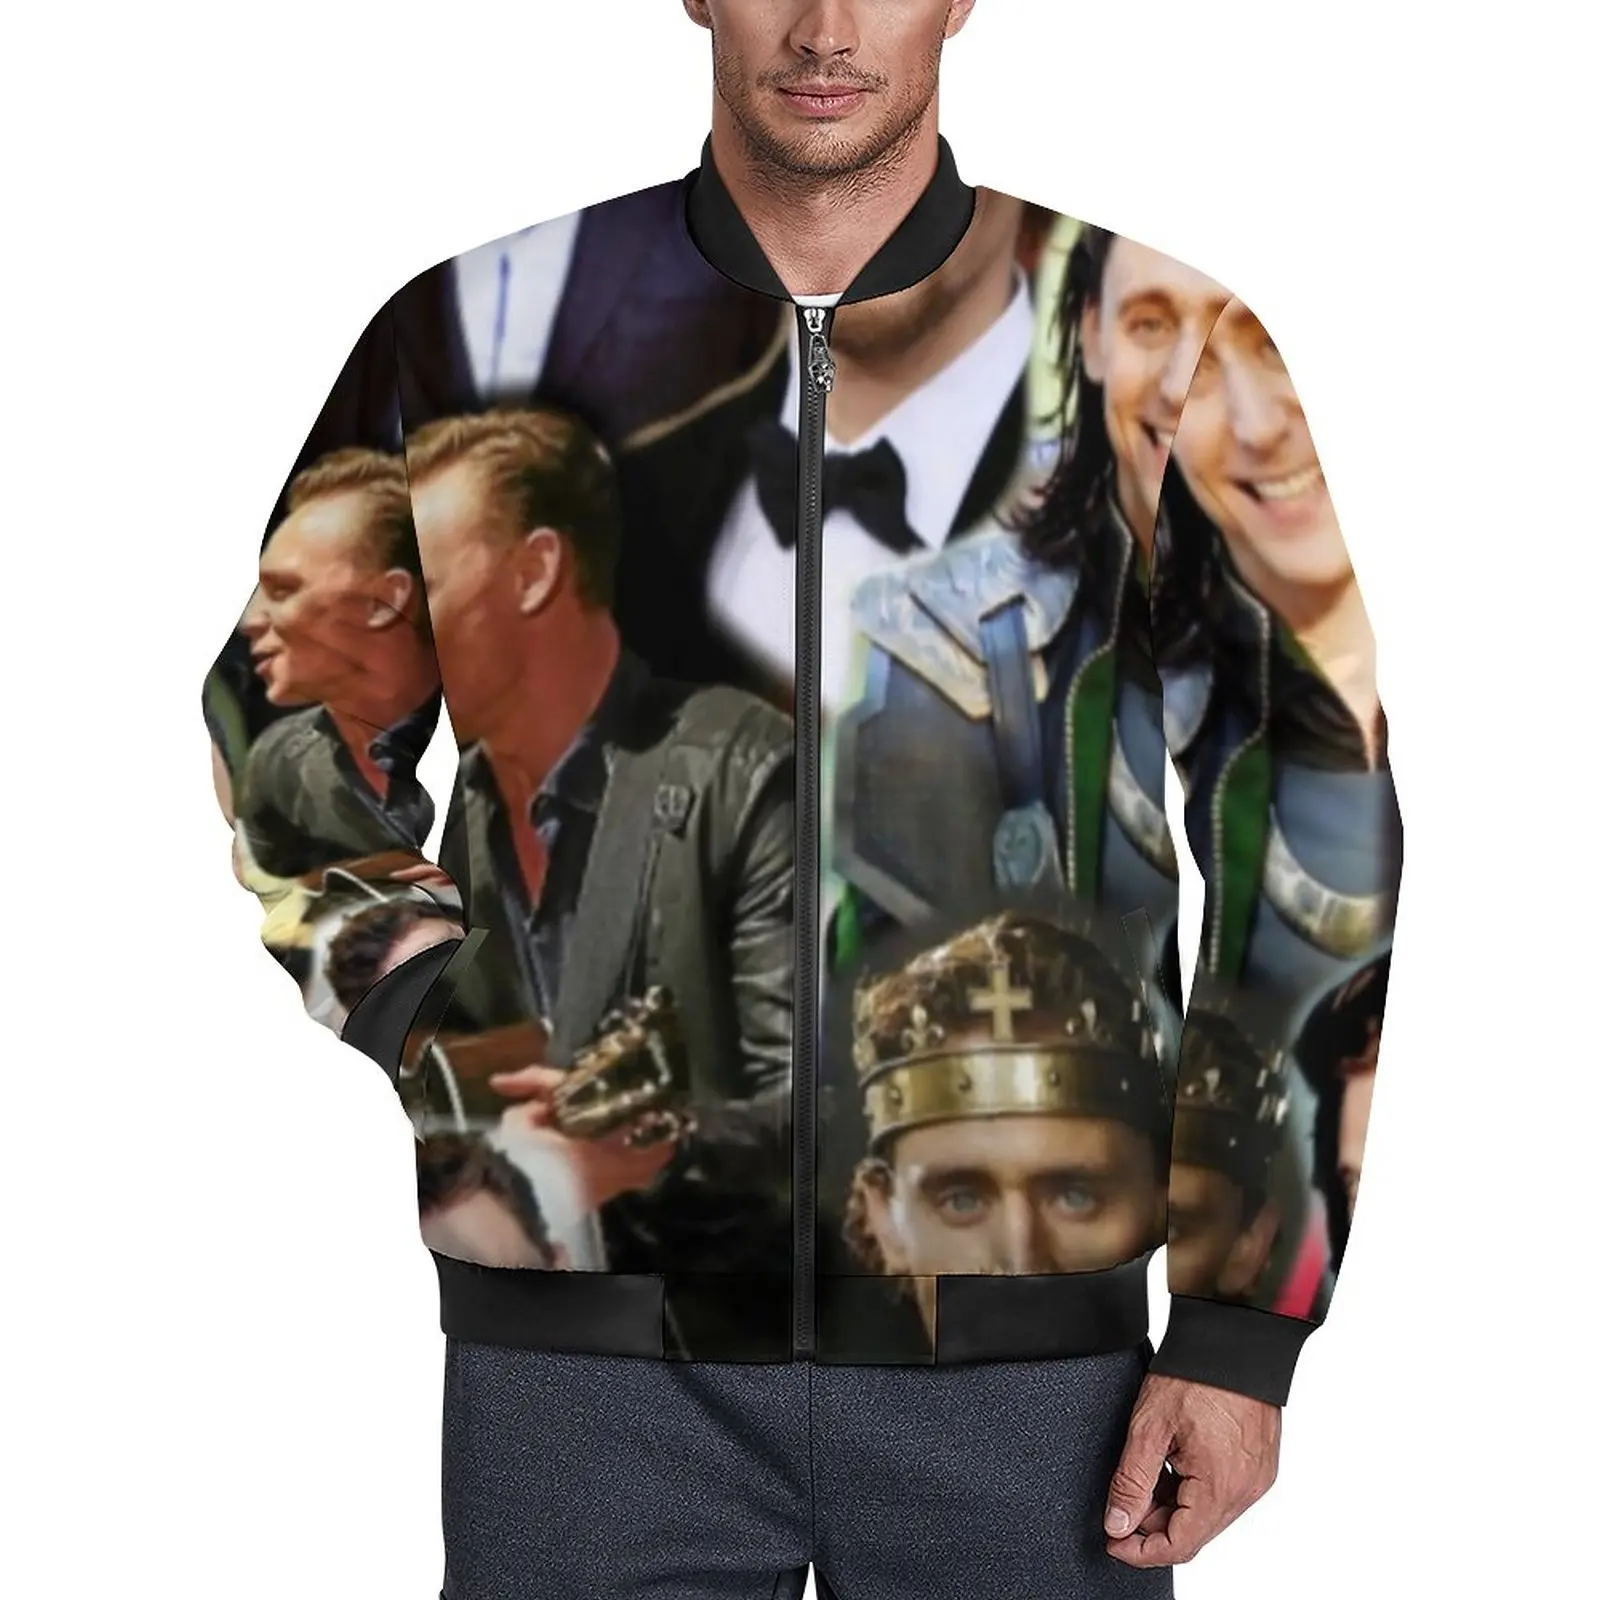 

Повседневные мужские куртки с коллажем Tom Hiddleston, пальто с фигурками из фильма, осенняя уличная стильная куртка на молнии, свободная ветровка с графическим рисунком